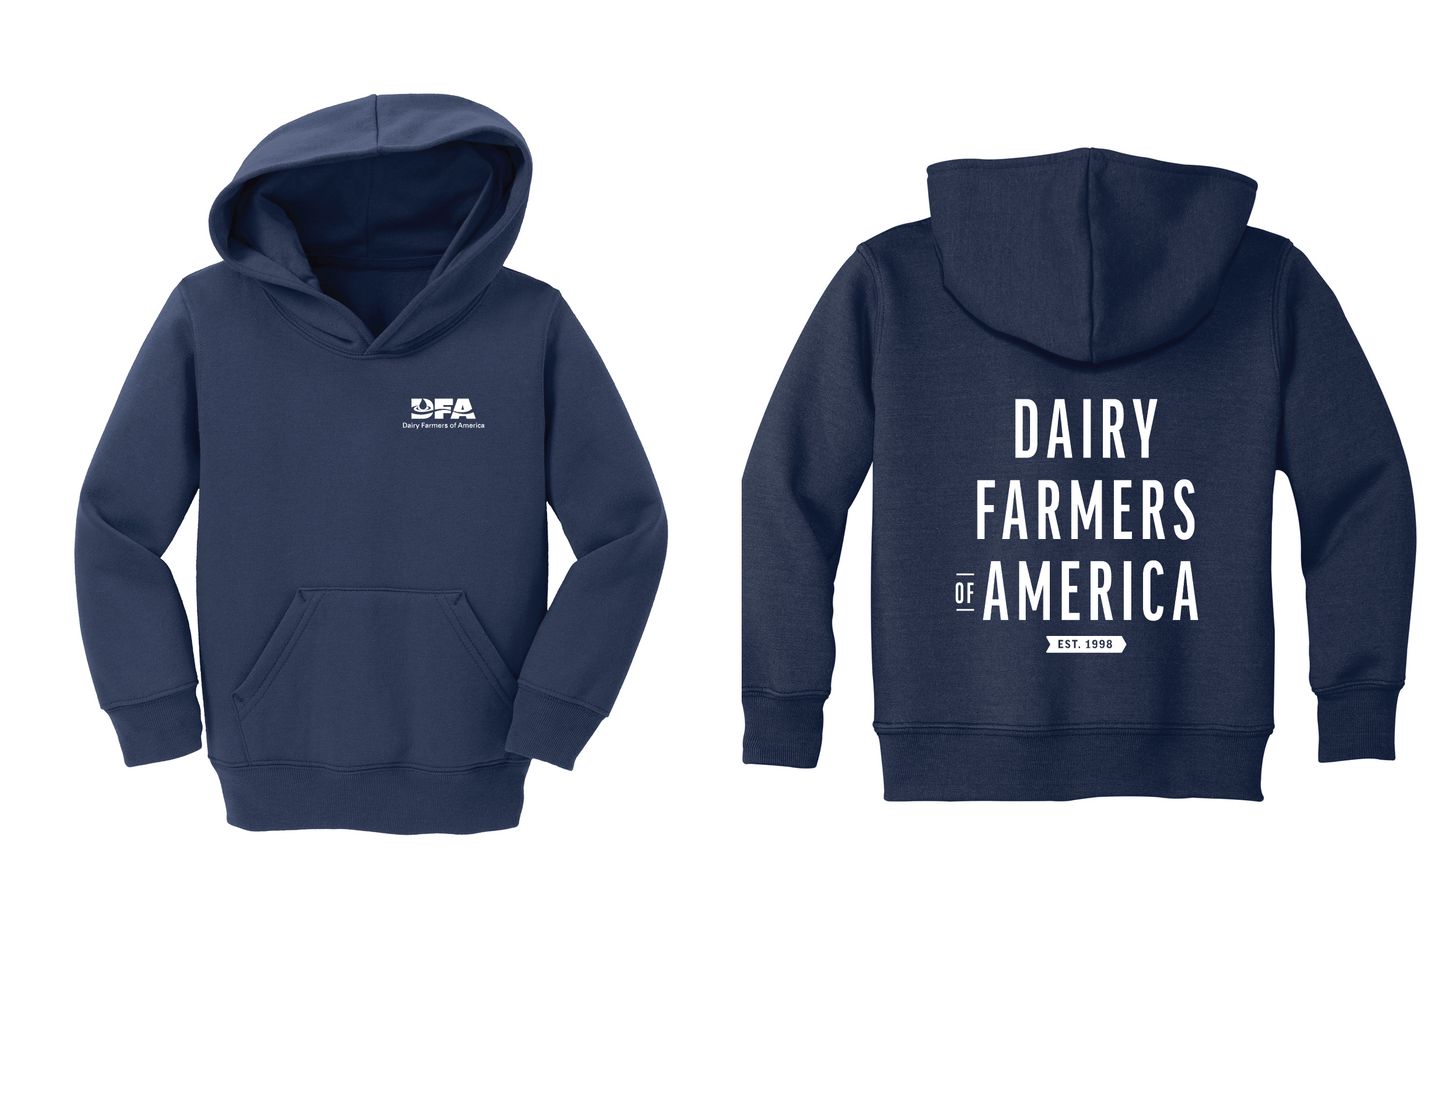 "DAIRY FARMERS OF AMERICA, est. 1998" toddler sweatshirt hoodie